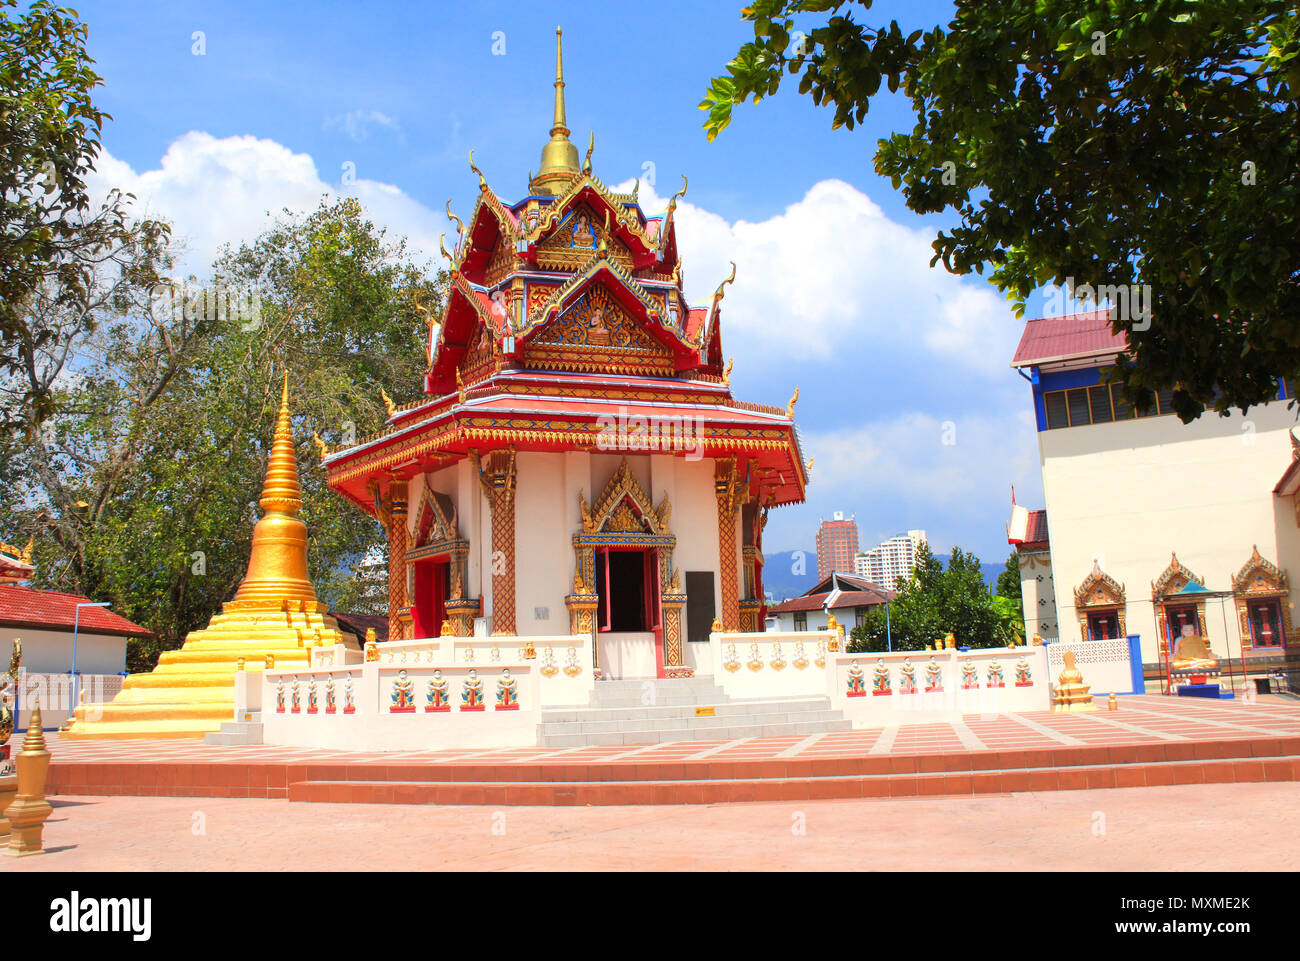 Dans le pavillon, Pulau Tikus (temple bouddhiste thaï Wat Chayamangkalaram), célèbre attraction touristique à Georgetown, l'île de Penang, Malaisie Banque D'Images